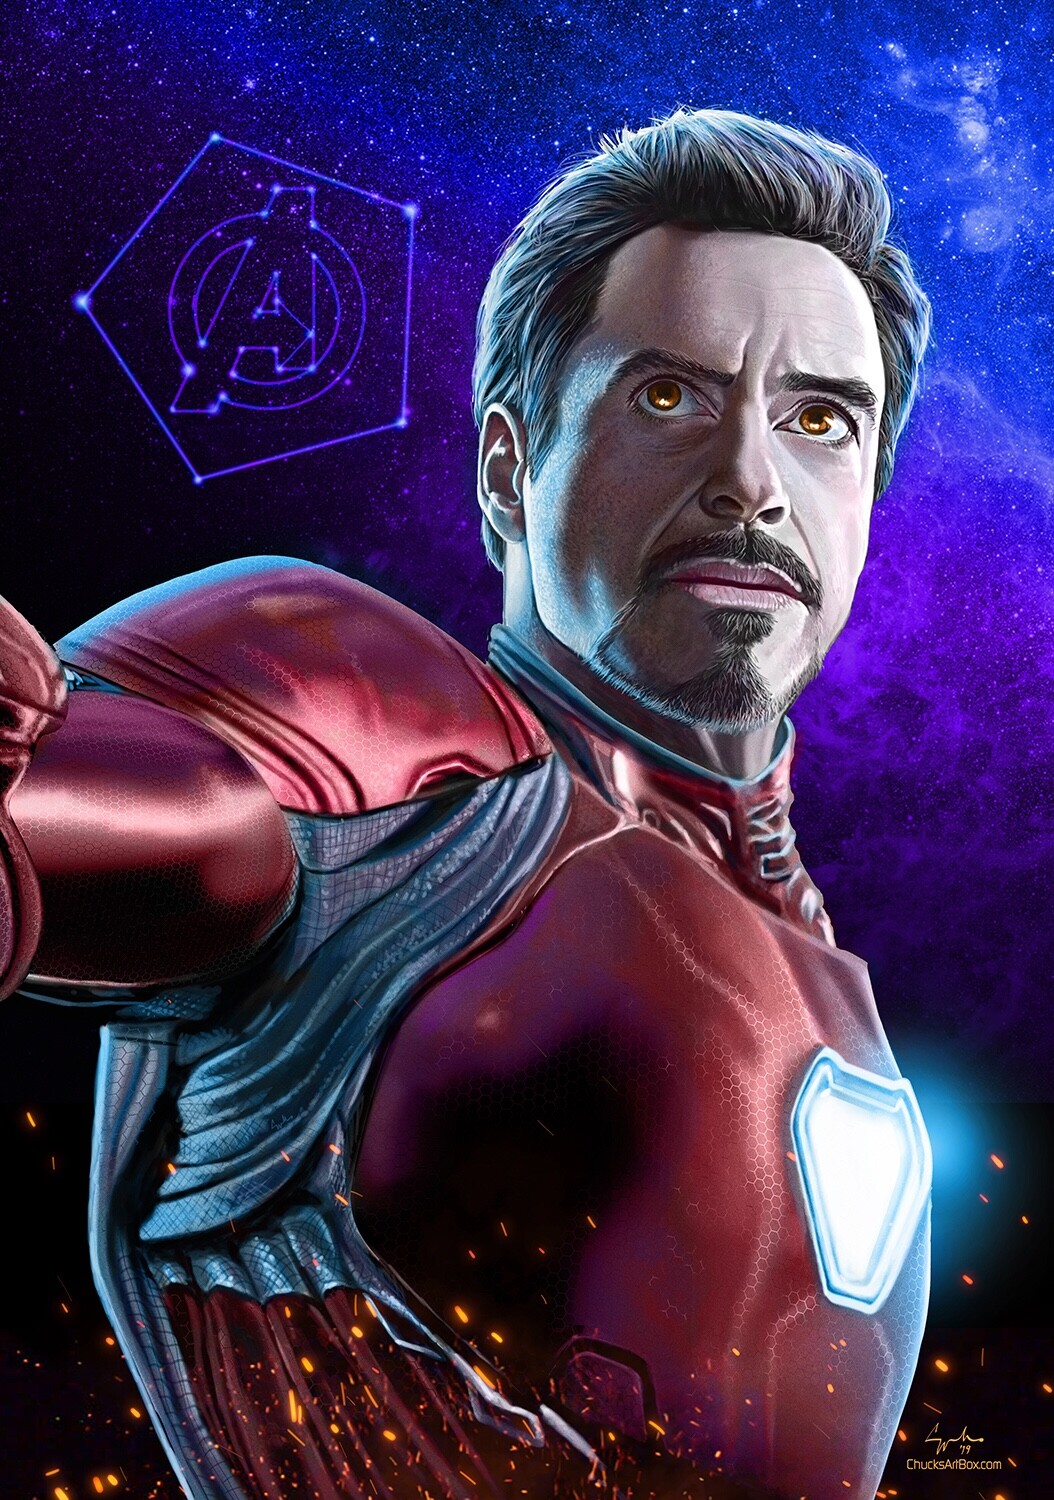 ArtStation - Tony Stark Iron Man